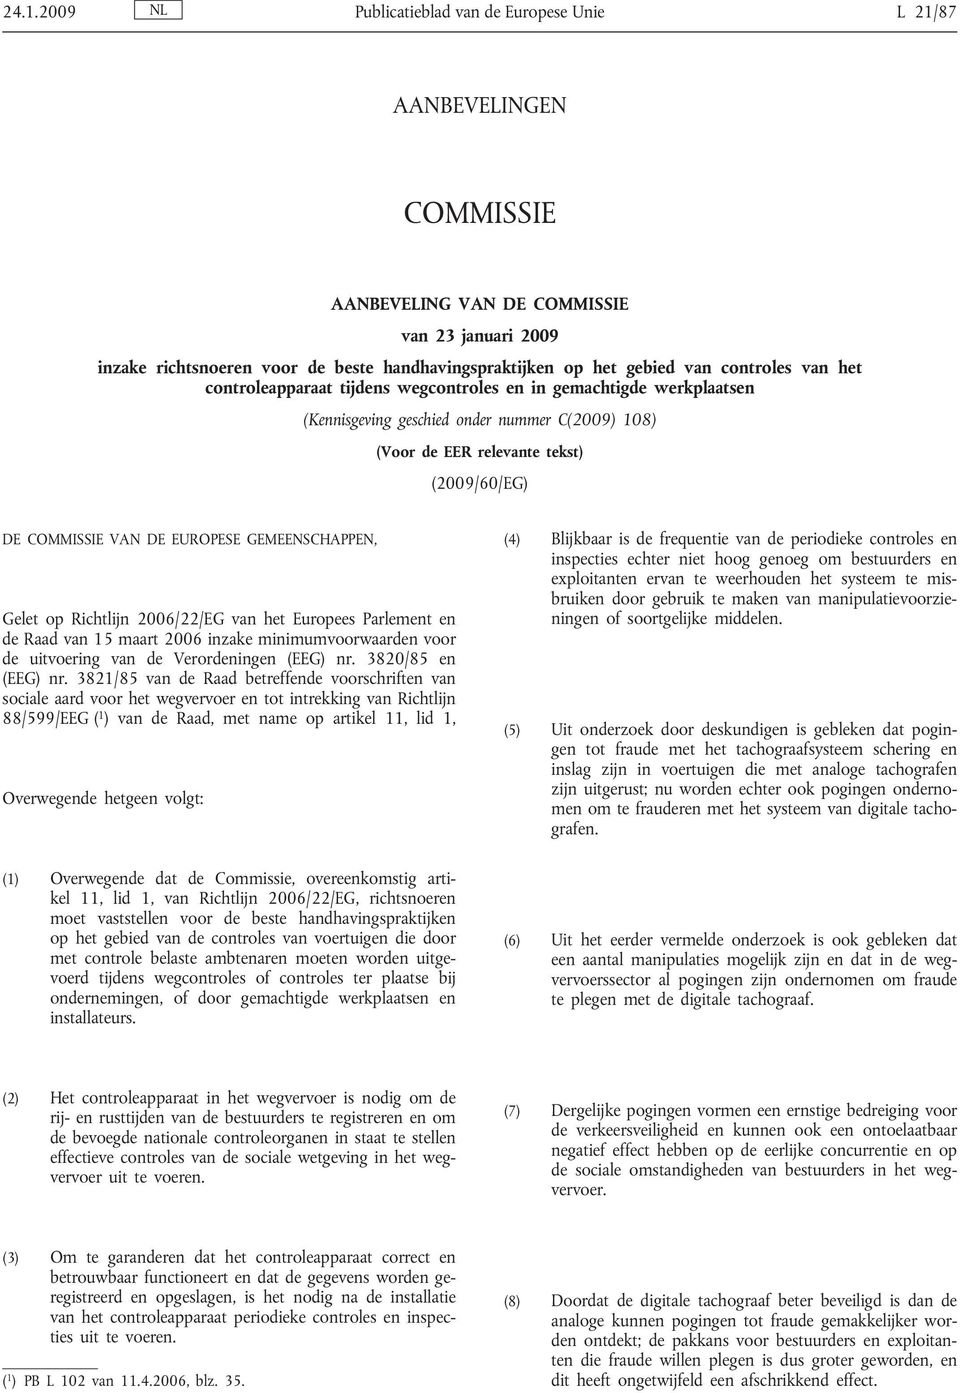 DE EUROPESE GEMEENSCHAPPEN, Gelet op Richtlijn 2006/22/EG van het Europees Parlement en de Raad van 15 maart 2006 inzake minimumvoorwaarden voor de uitvoering van de Verordeningen (EEG) nr.